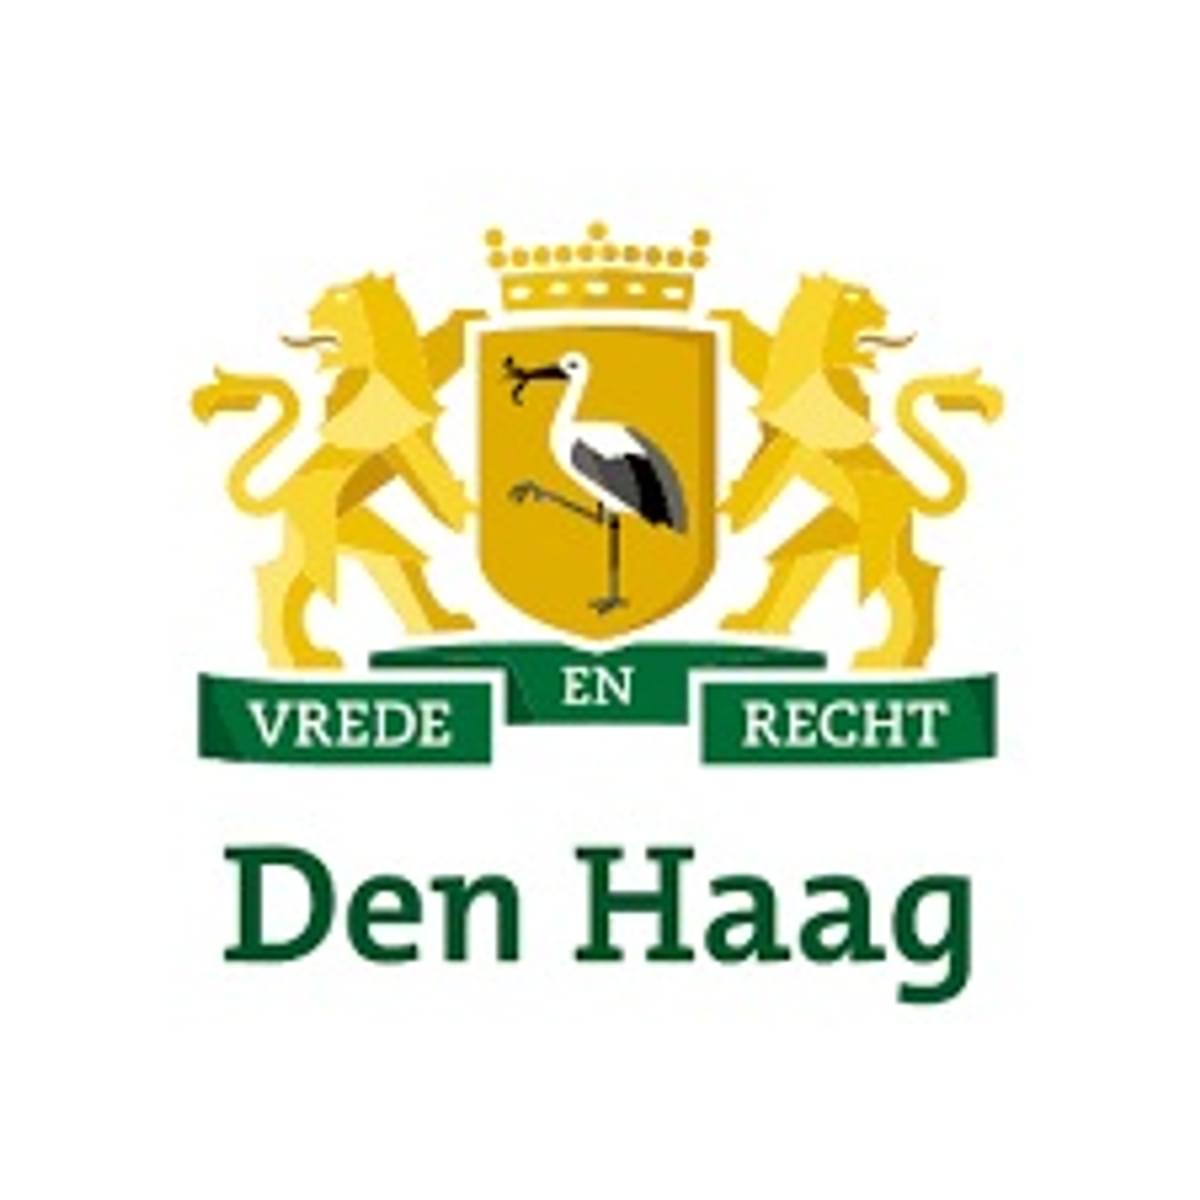 Hâck The Hague 2019 image